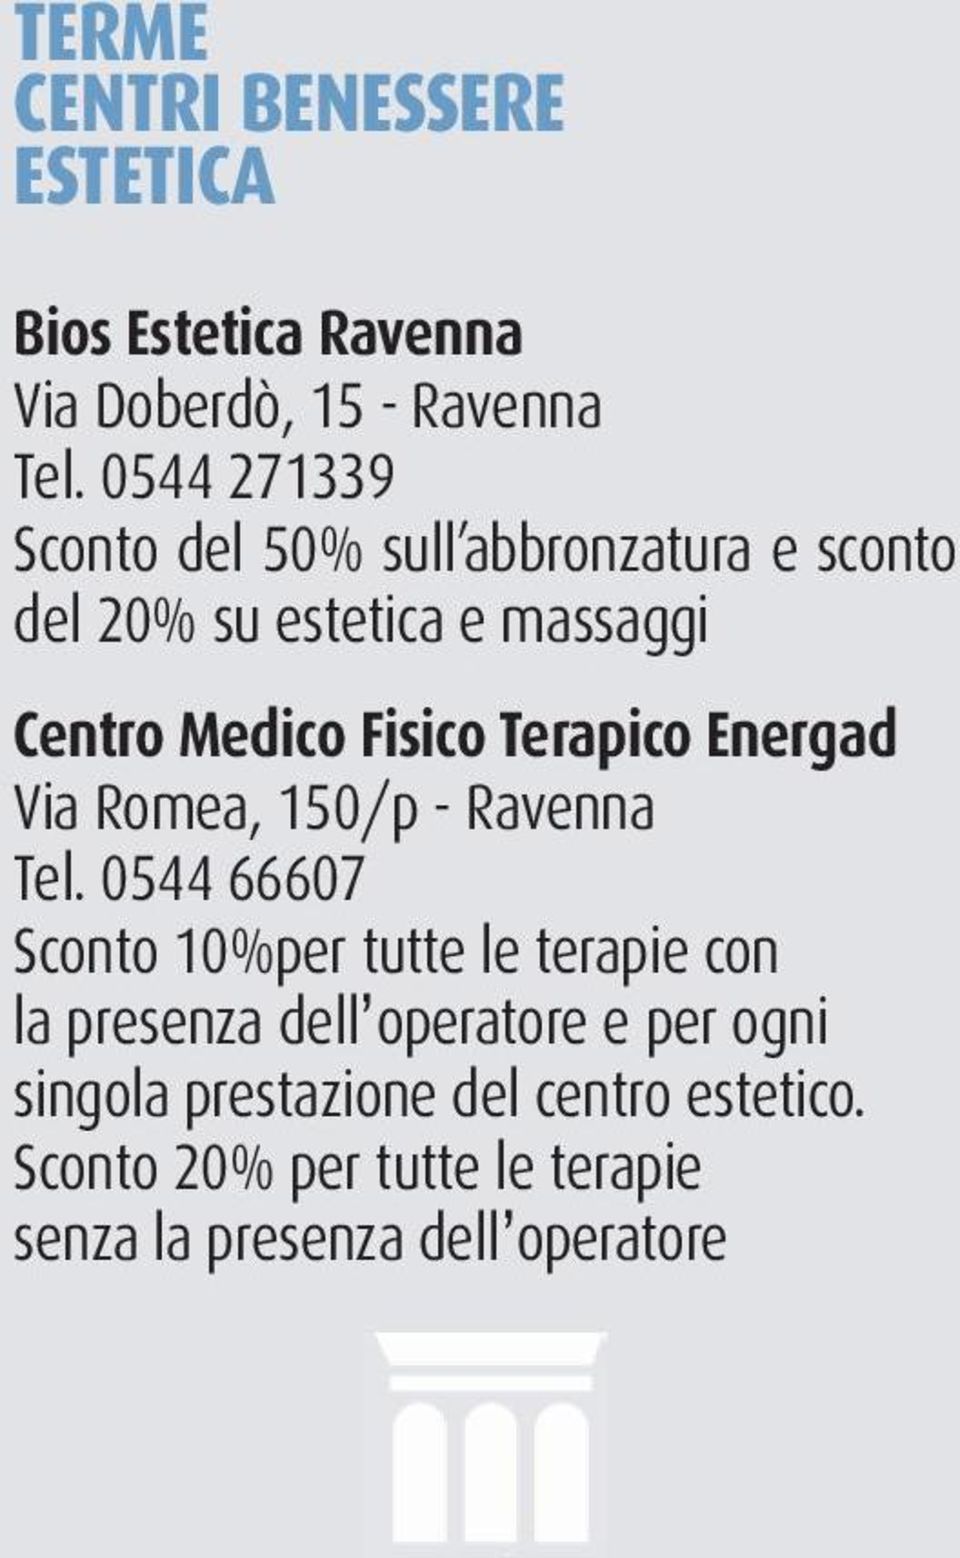 Terapico Energad Via Romea, 150/p - Ravenna Tel.